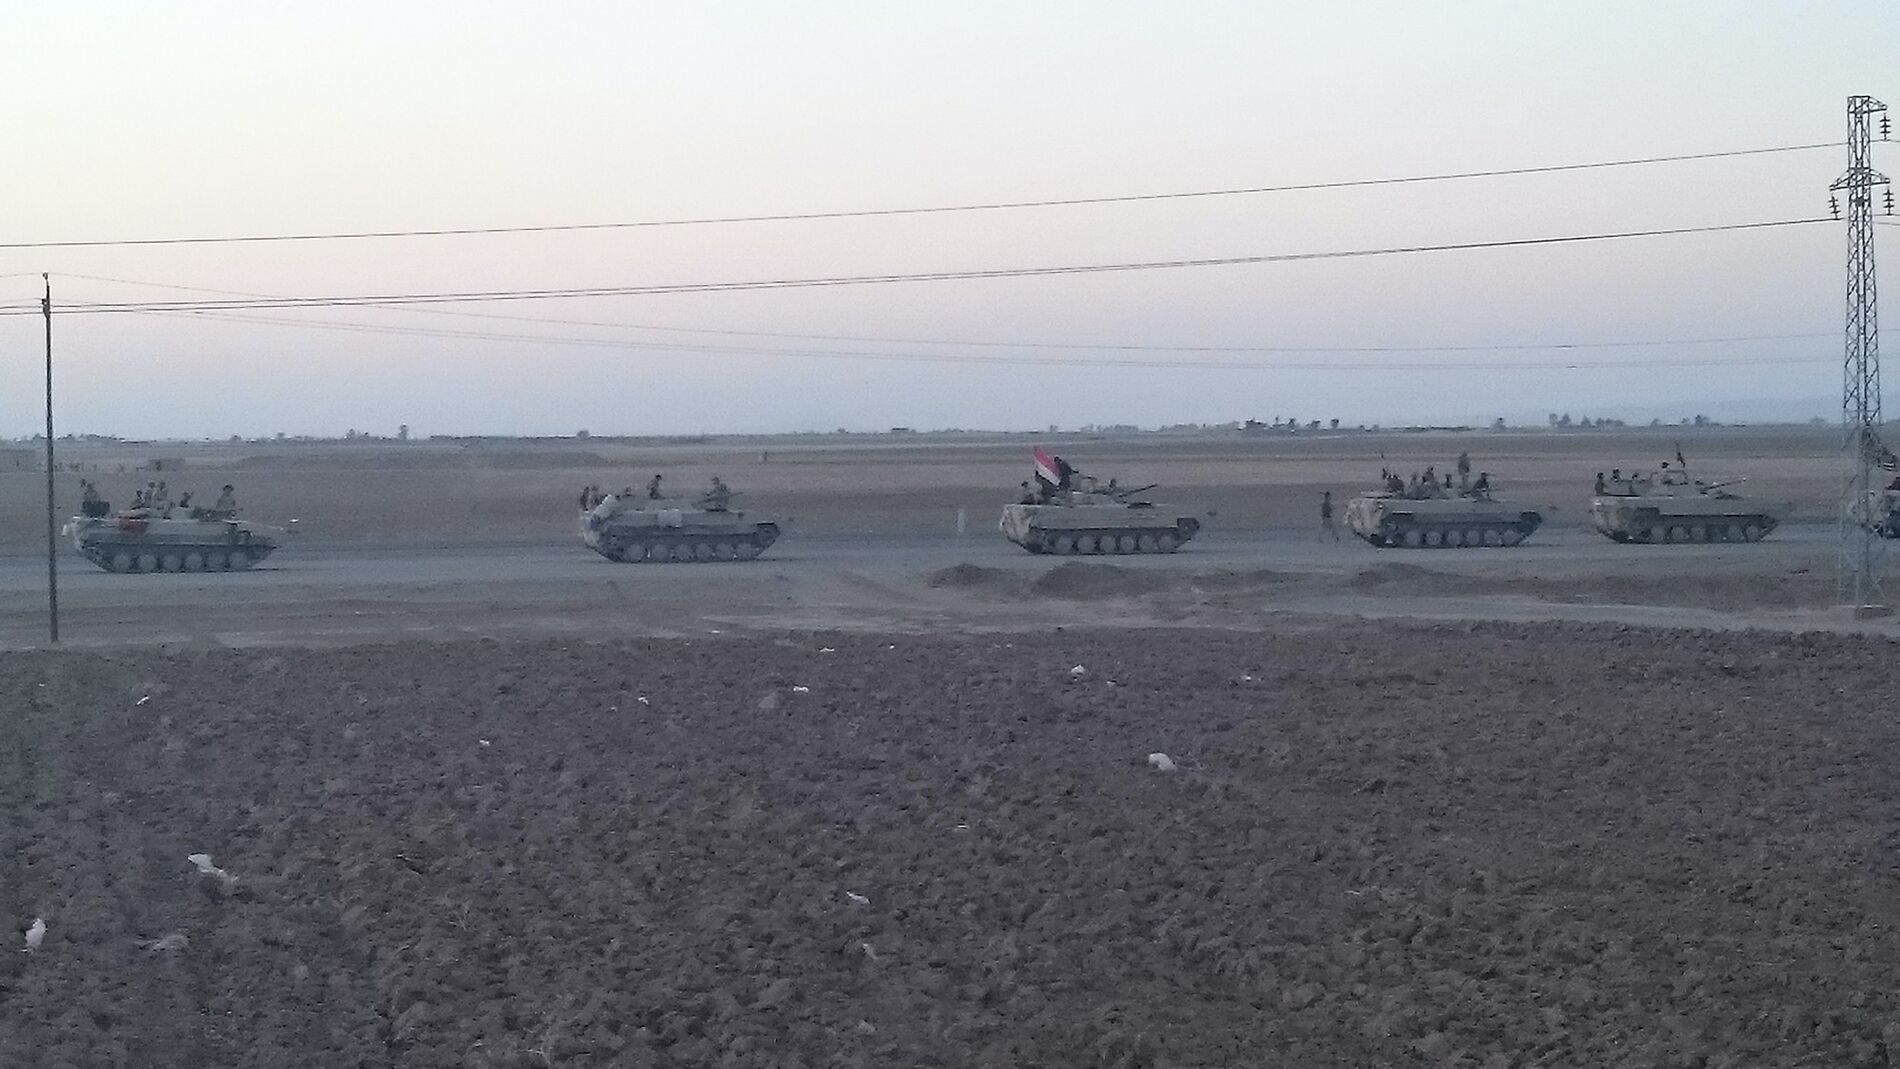 Irakische Panzer fahren morgens in Hawija auf einer Straße zwischen Äckern im Oktober 2017.